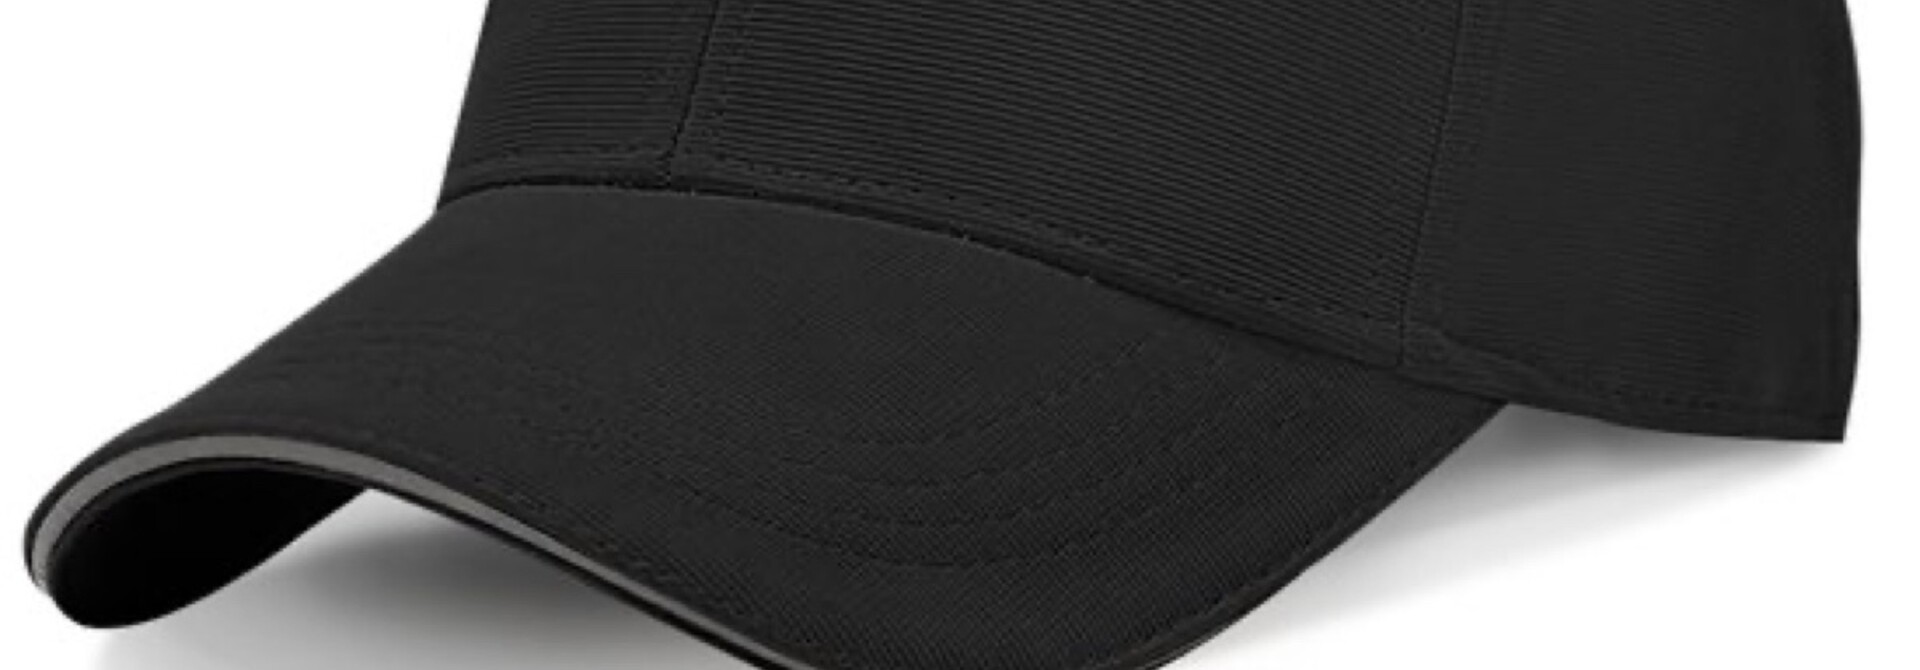 Baseballkappe für Männer und Frauen - Mit Reflektierendem Rand - Trucker Cap - Kopfumfang 55-60 CM  - Schwarz